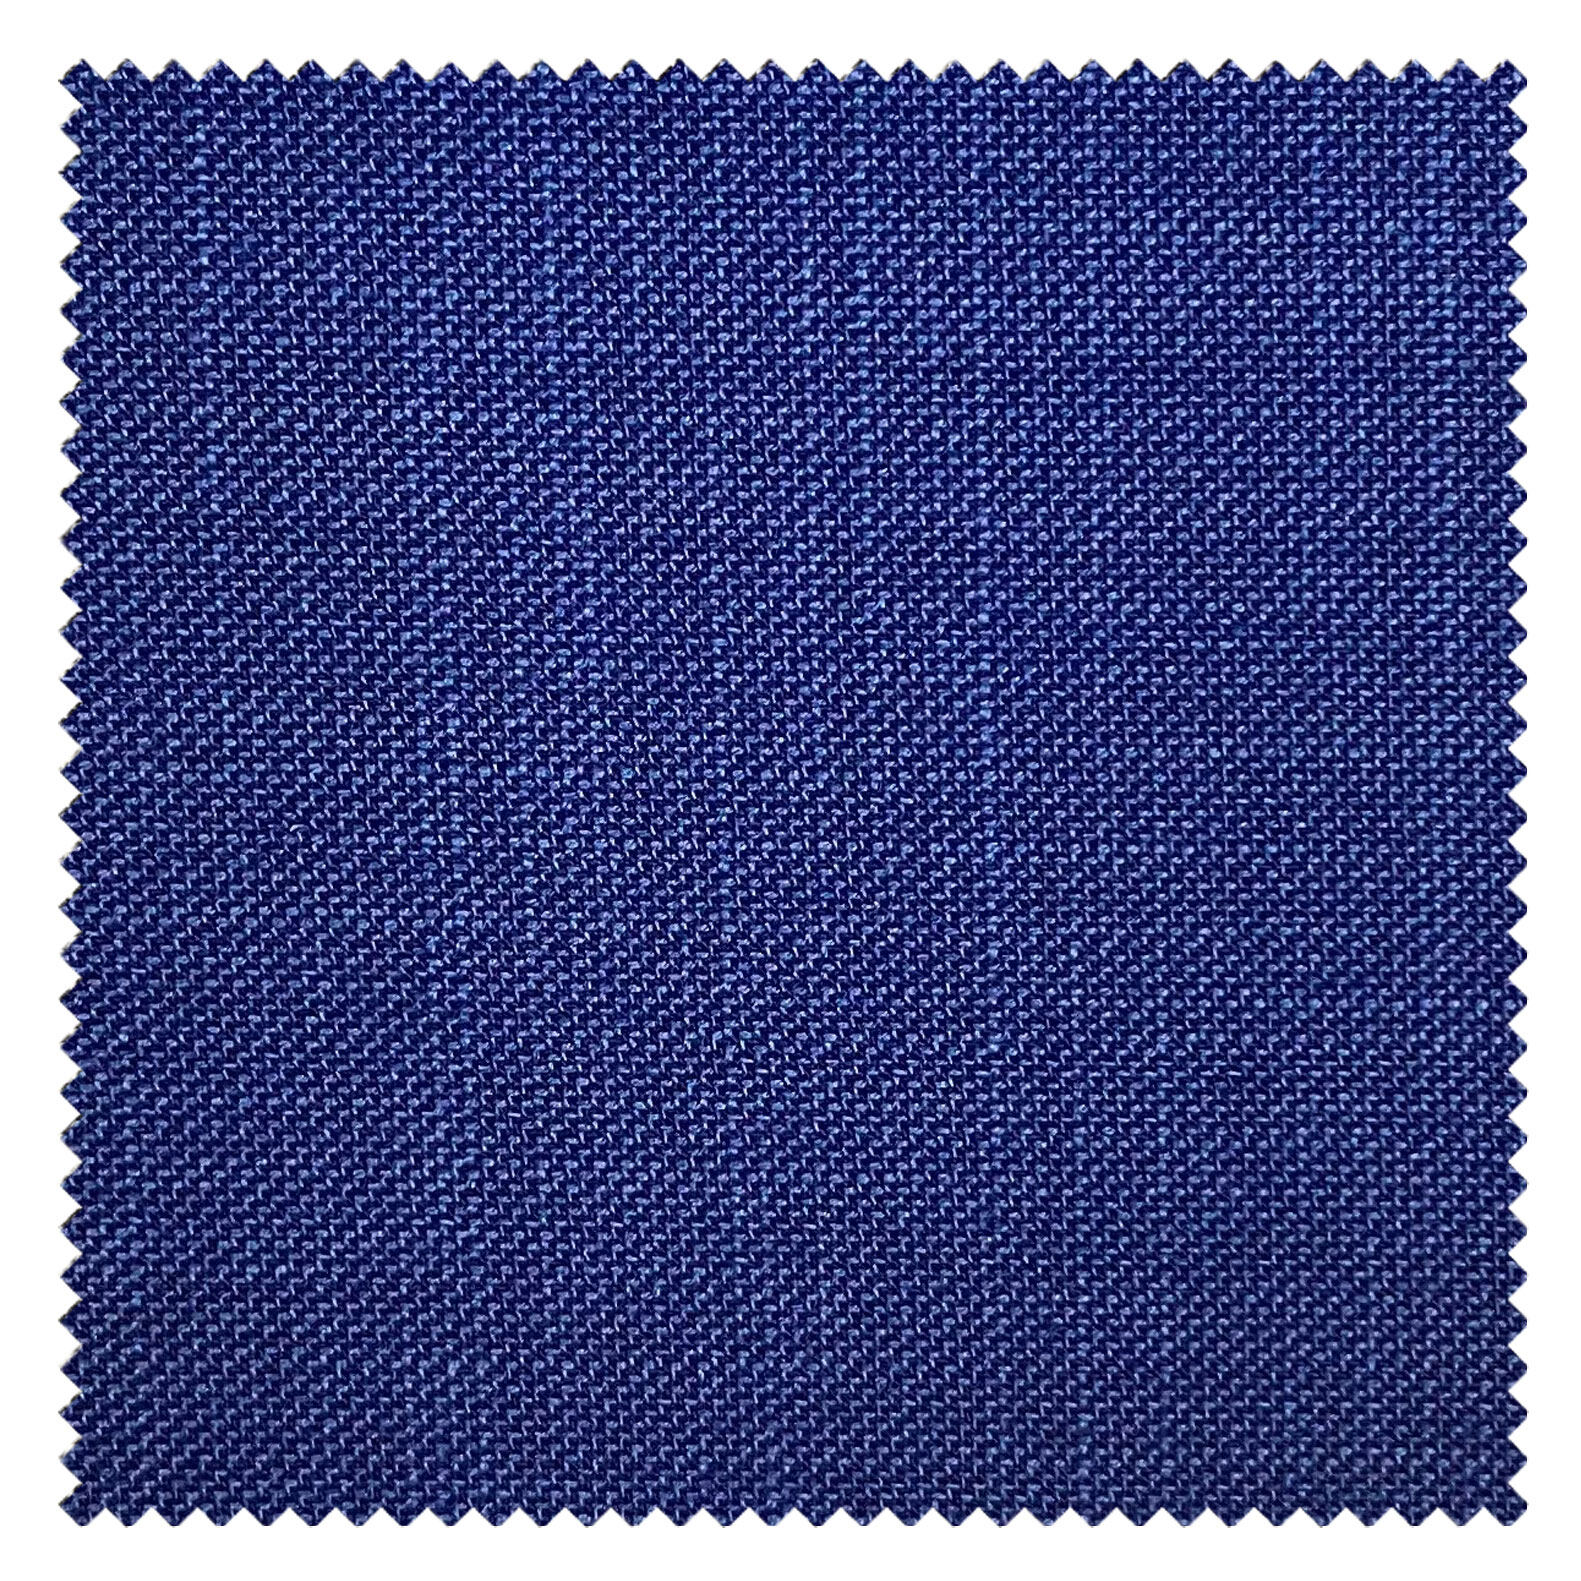 KINGMAN Cashmere Wool Fabric Super Sharkskin ROYAL BLUE ผ้าตัดชุดสูท สีน้ำเงินสด กางเกง ผู้ชาย ผ้าตัดเสื้อ ยูนิฟอร์ม ผ้าวูล ผ้าคุณภาพดี กว้าง 60 นิ้ว ยาว 1 เมตร